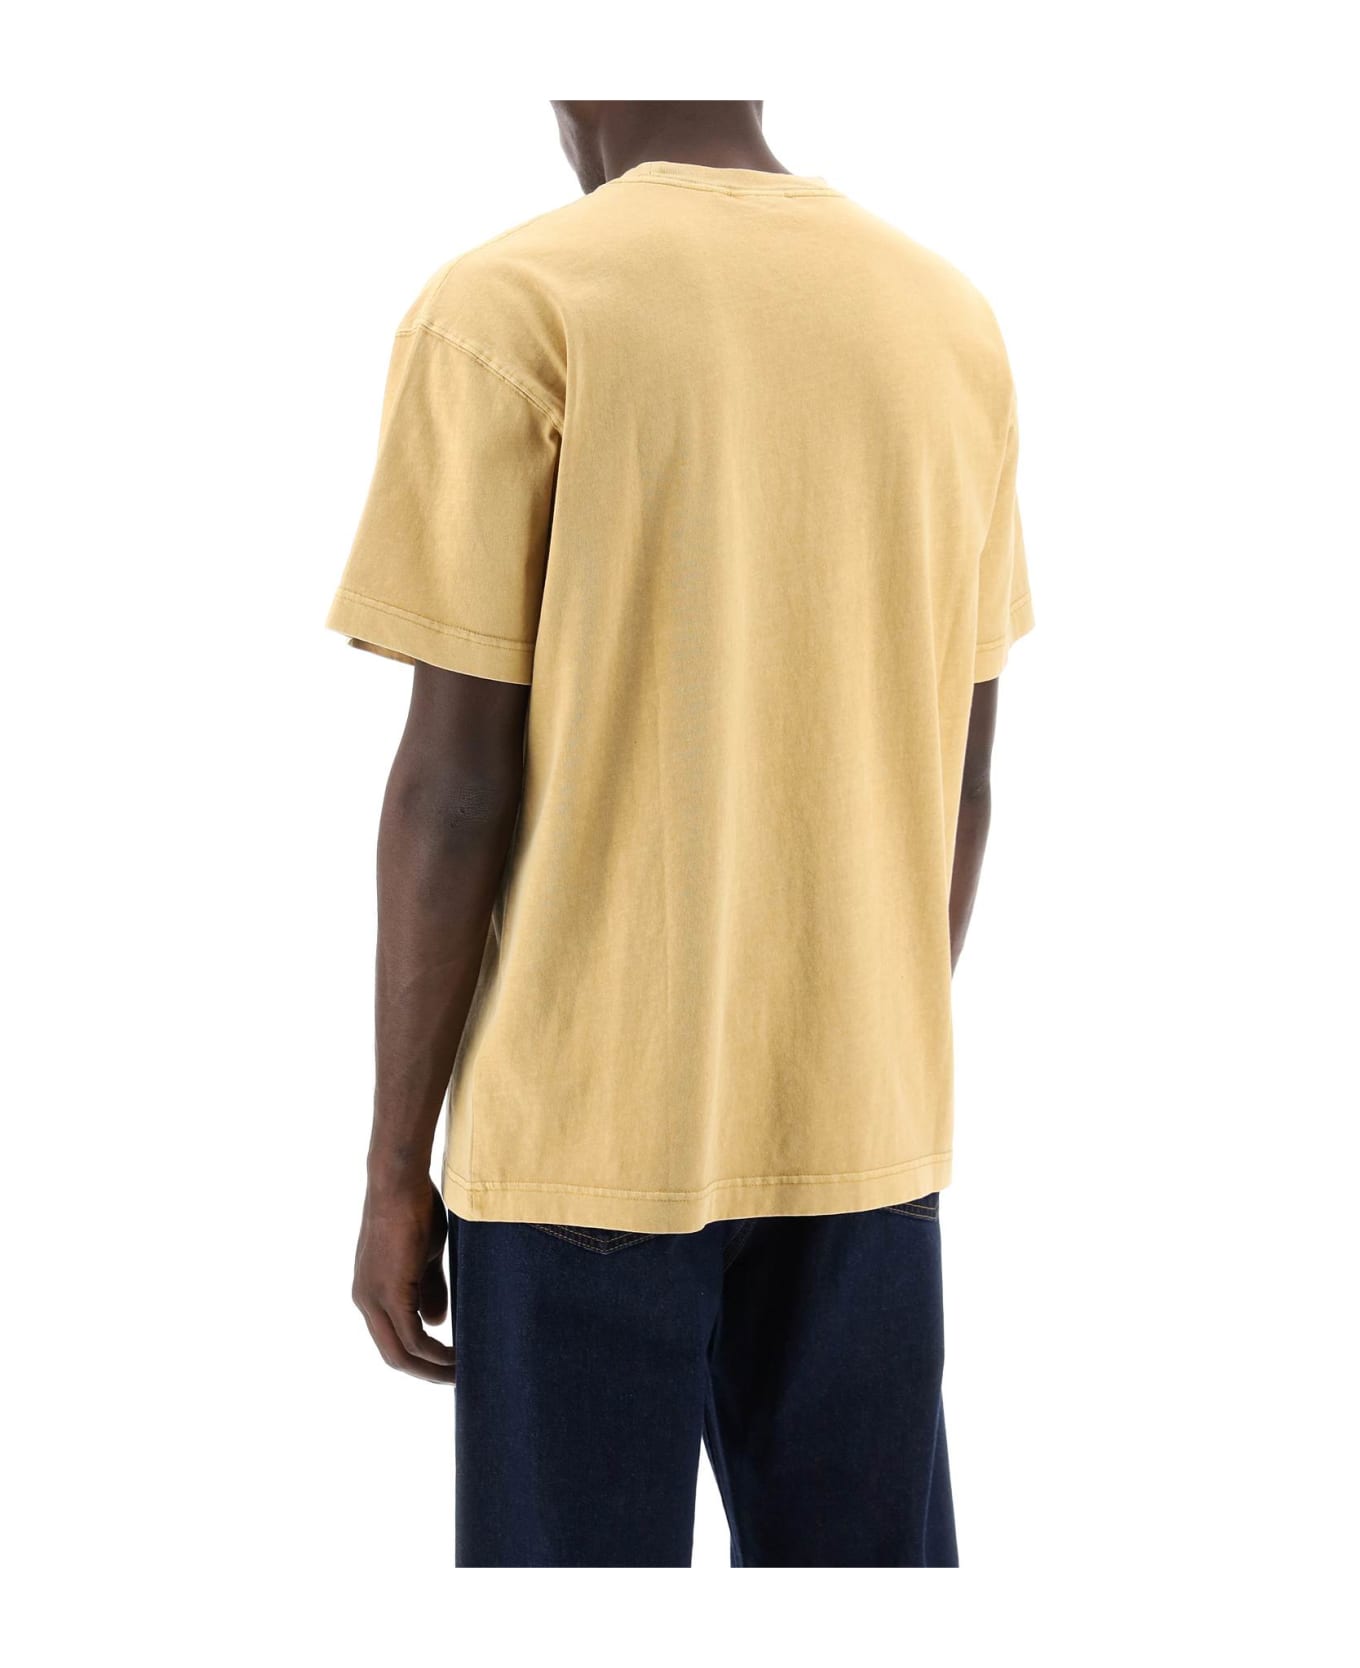 Carhartt Nelson T-shirt - Yh.gd Bourbon Garment Dyed